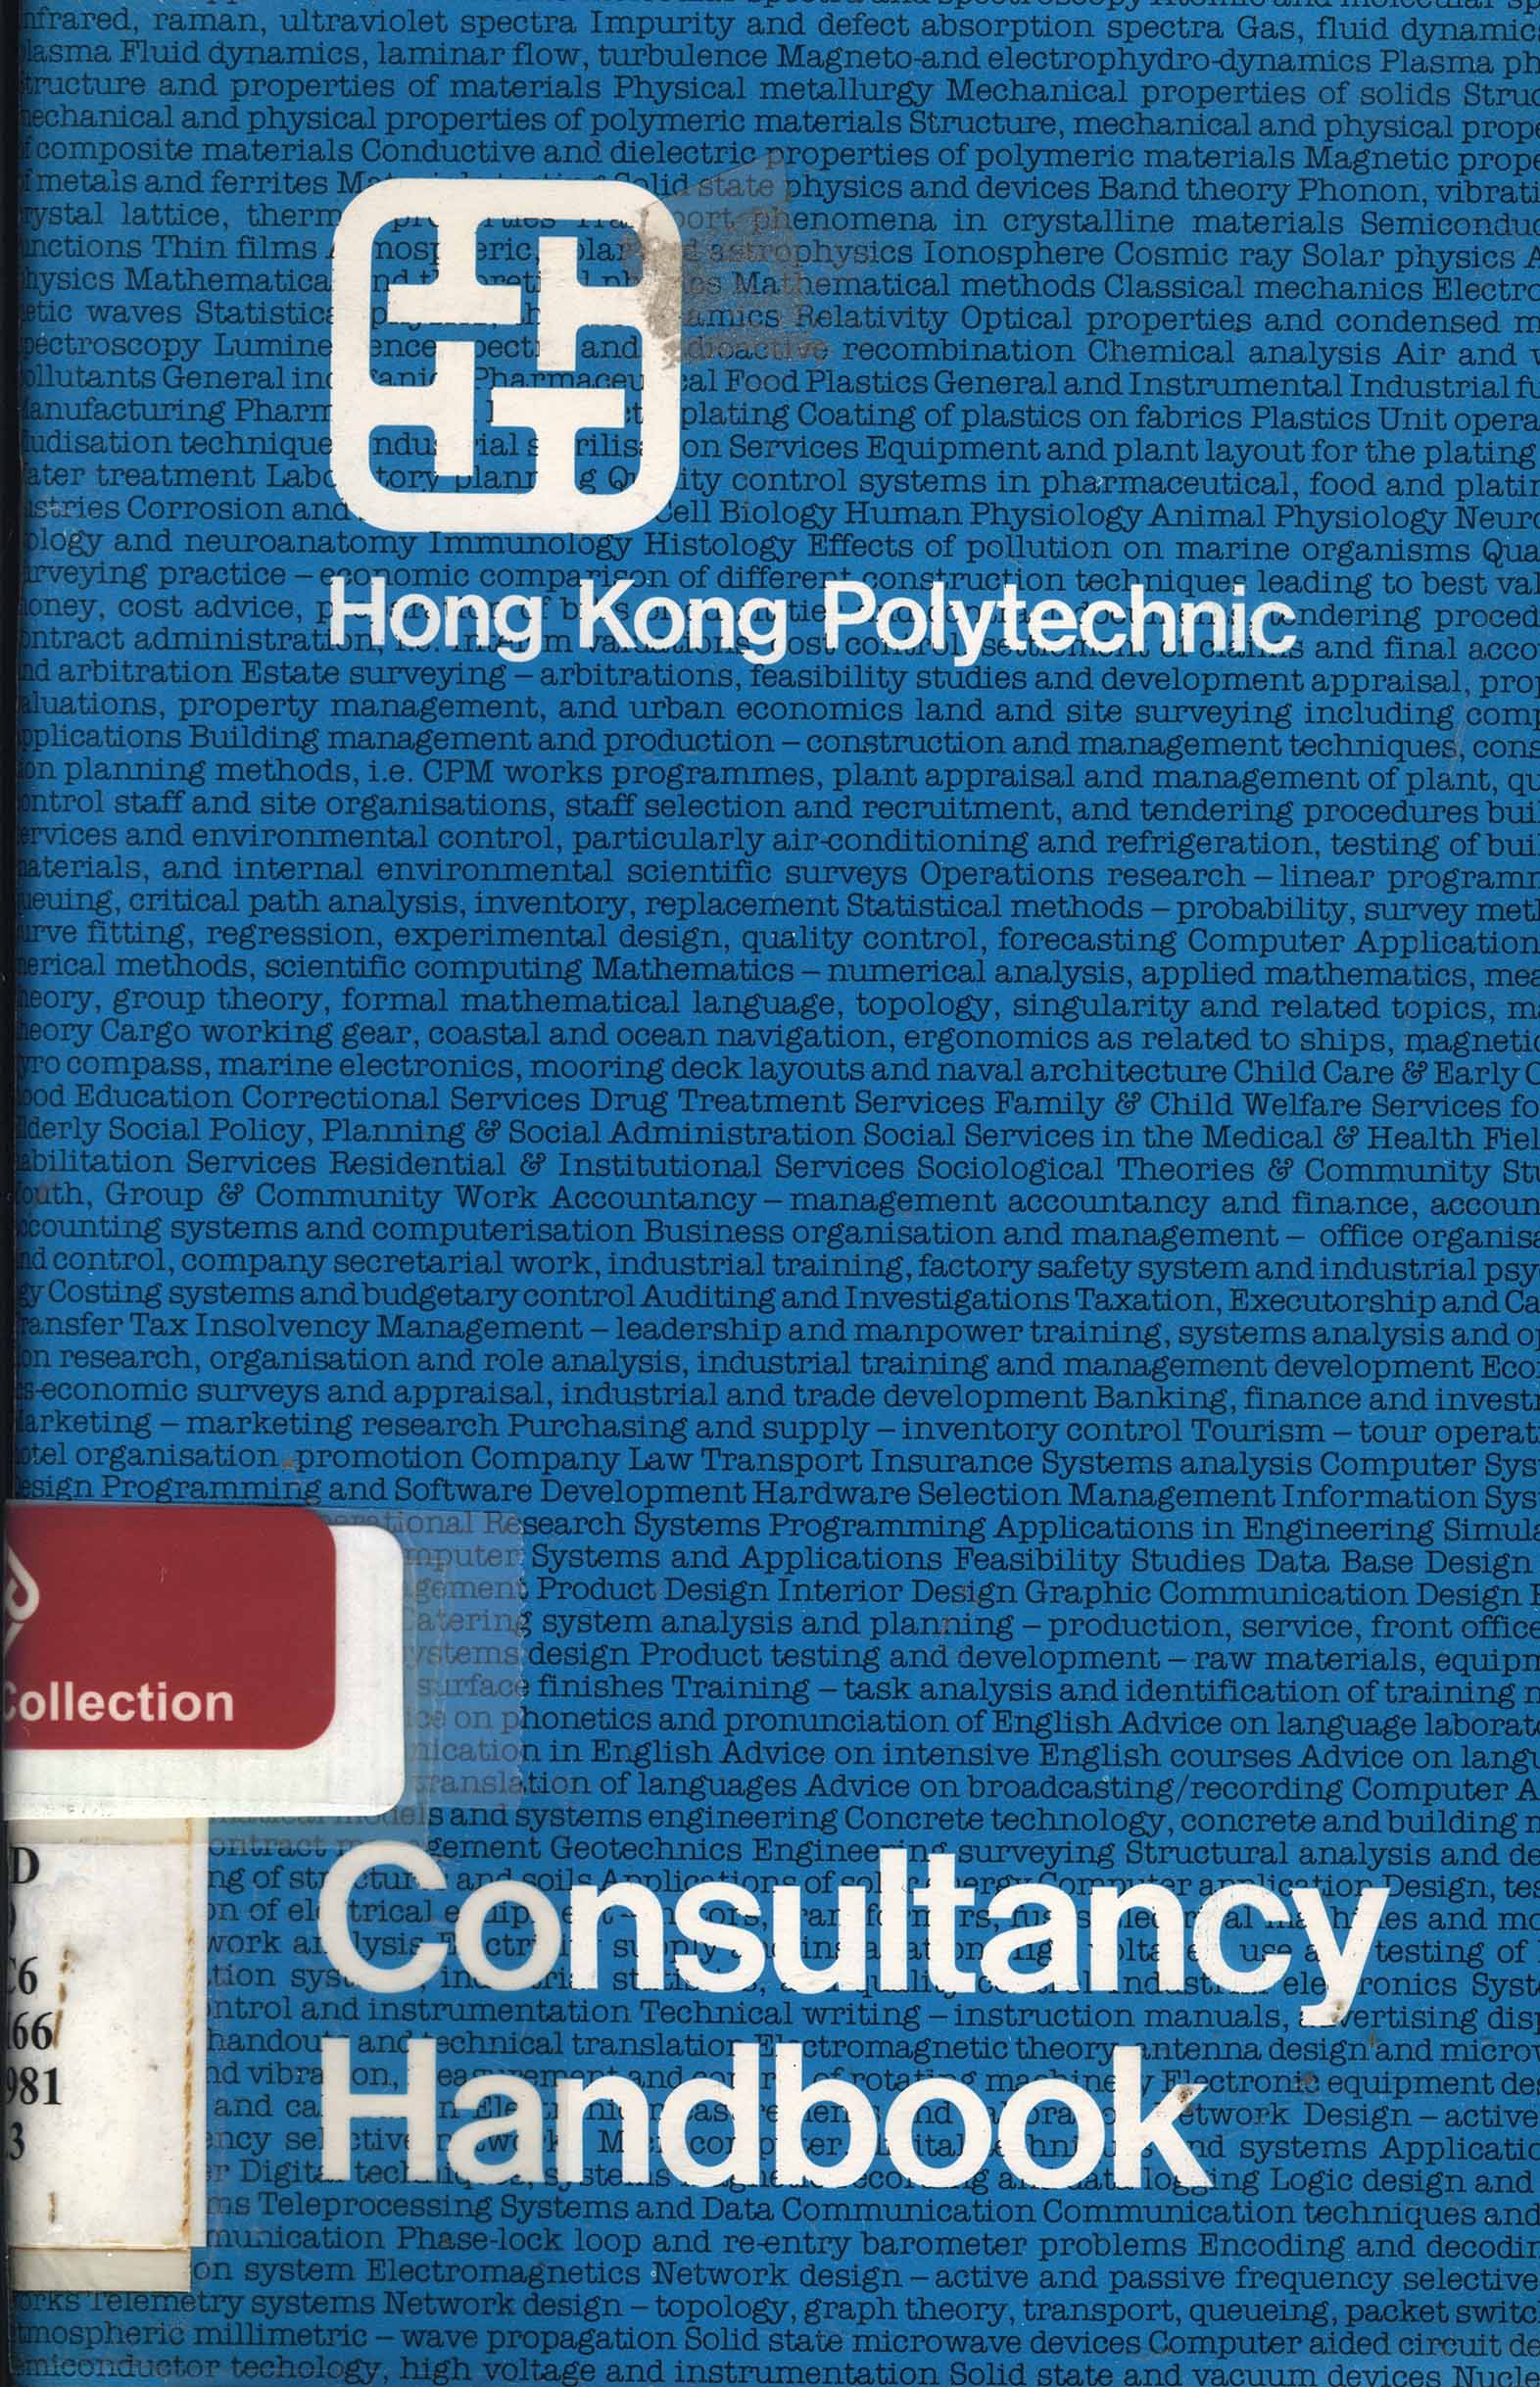 Consultancy handbook [1981]